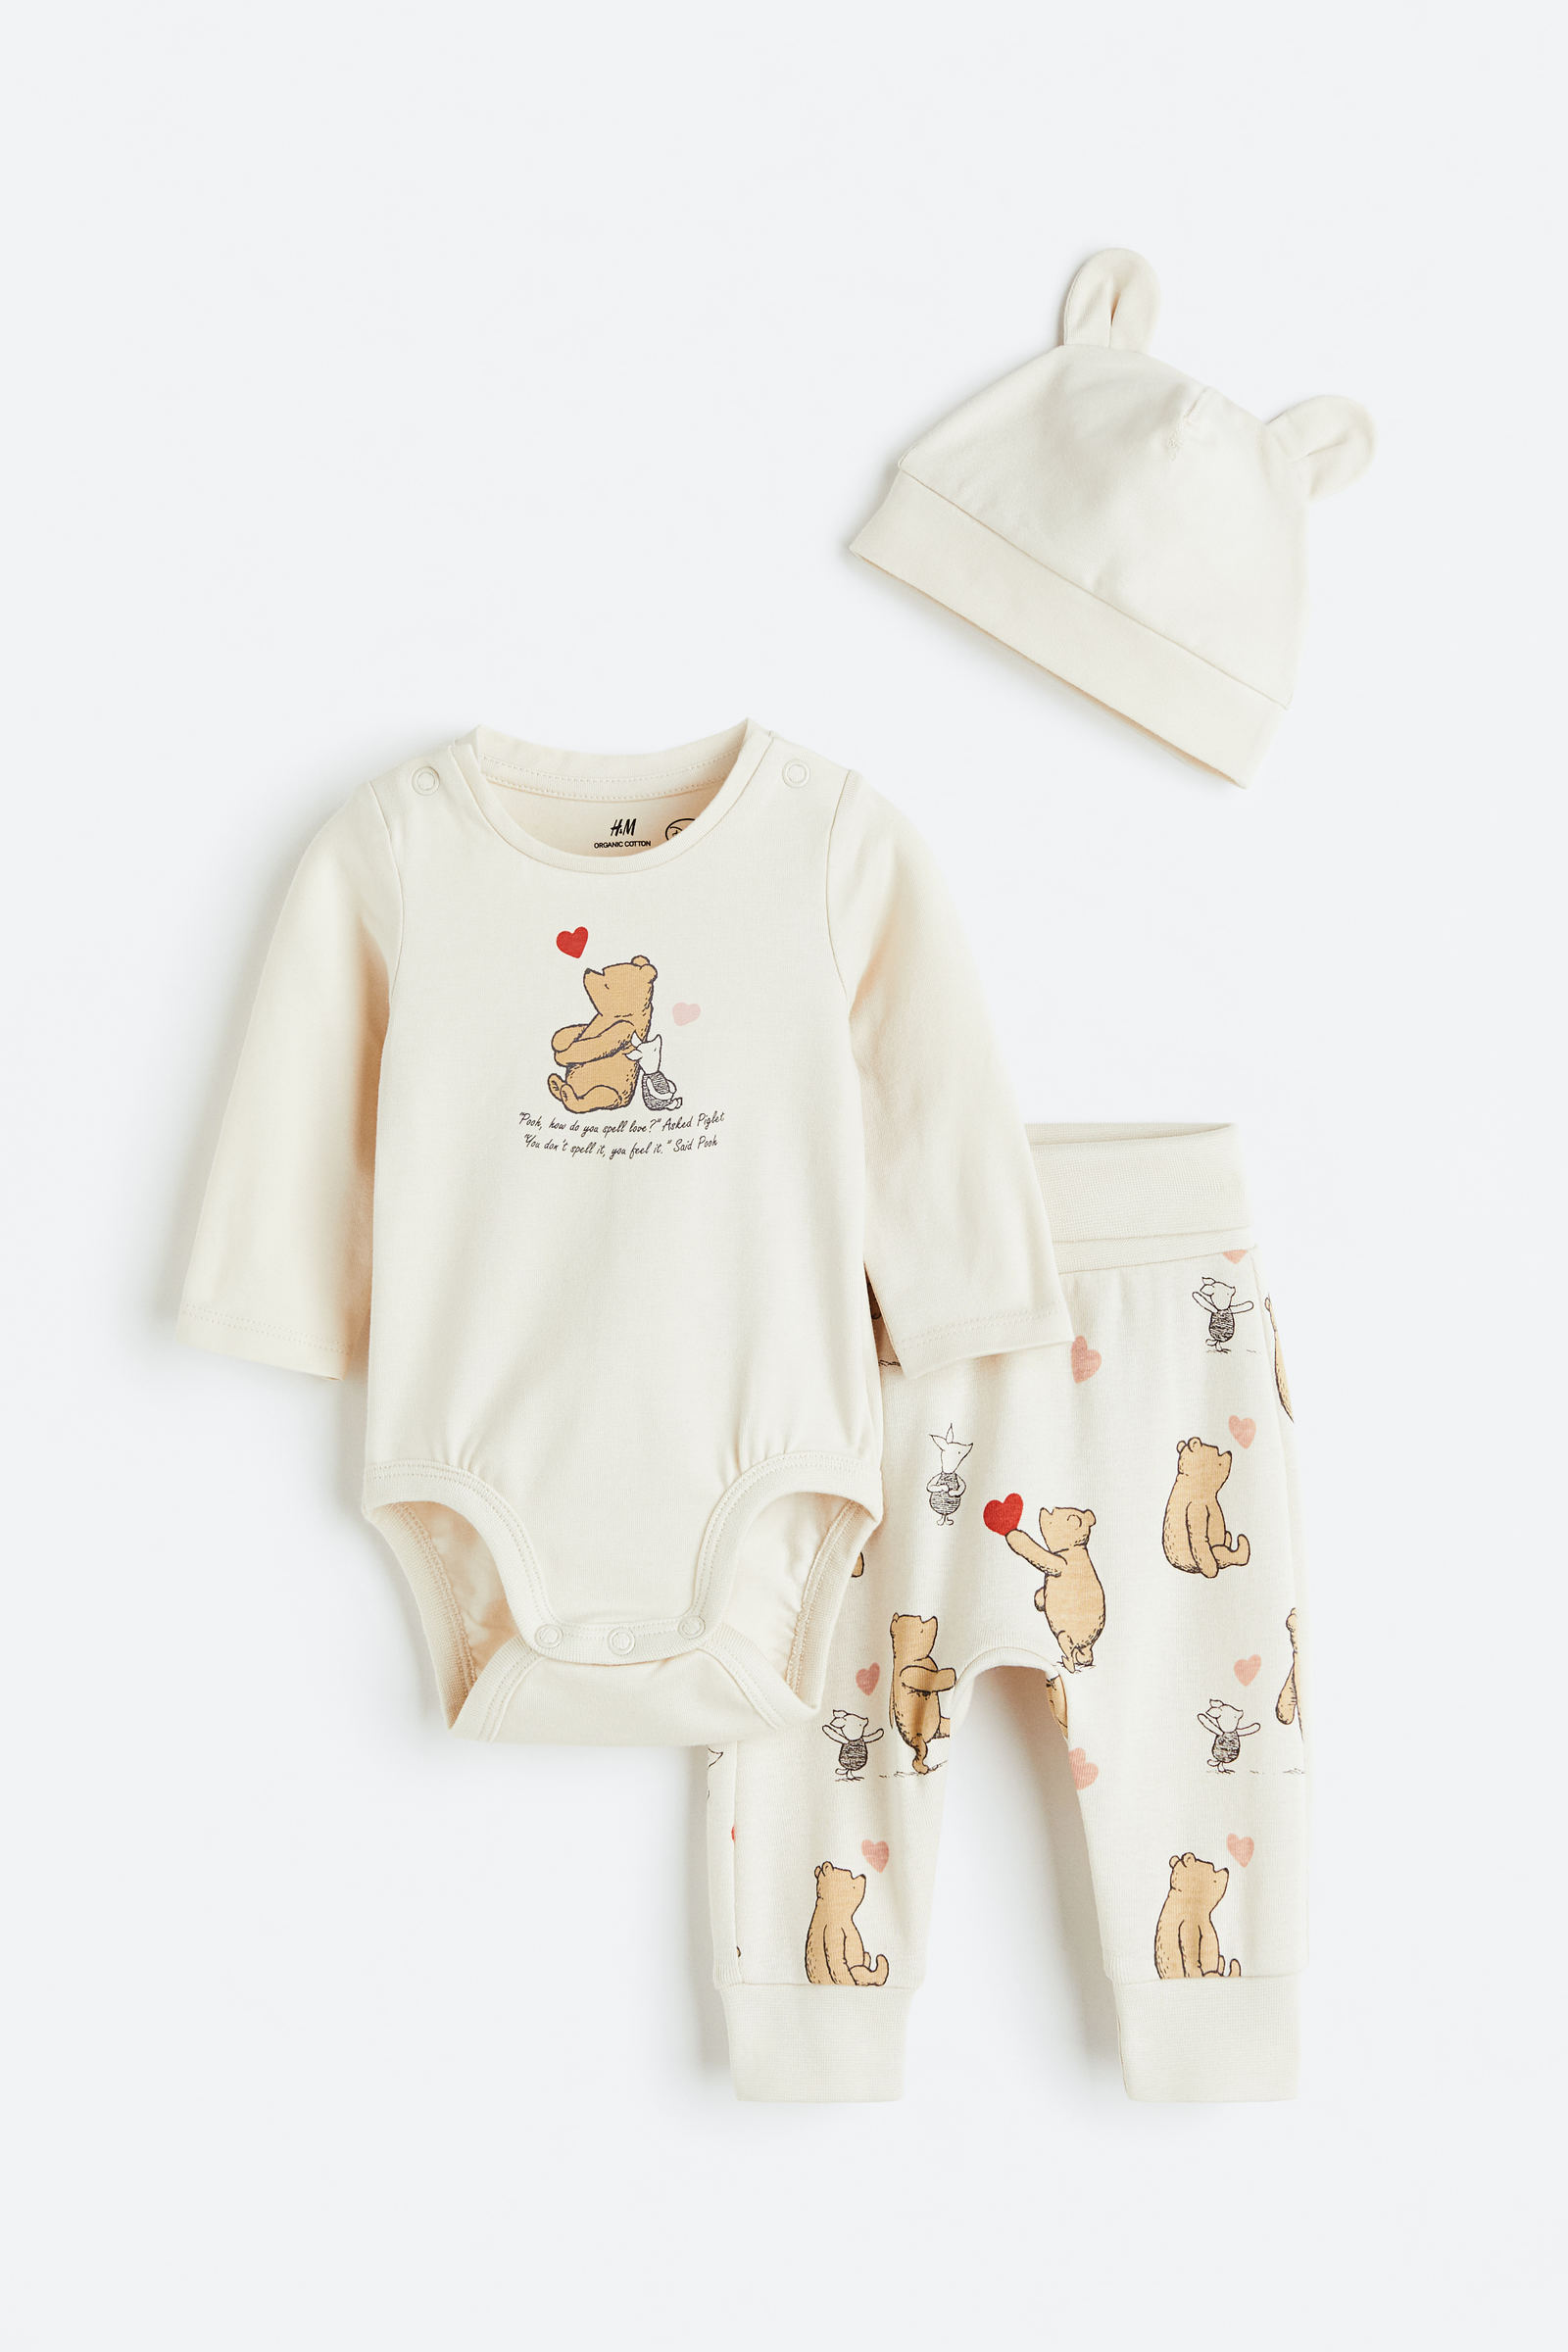 H&M dice que podrás compostar su nueva línea de ropa para bebés